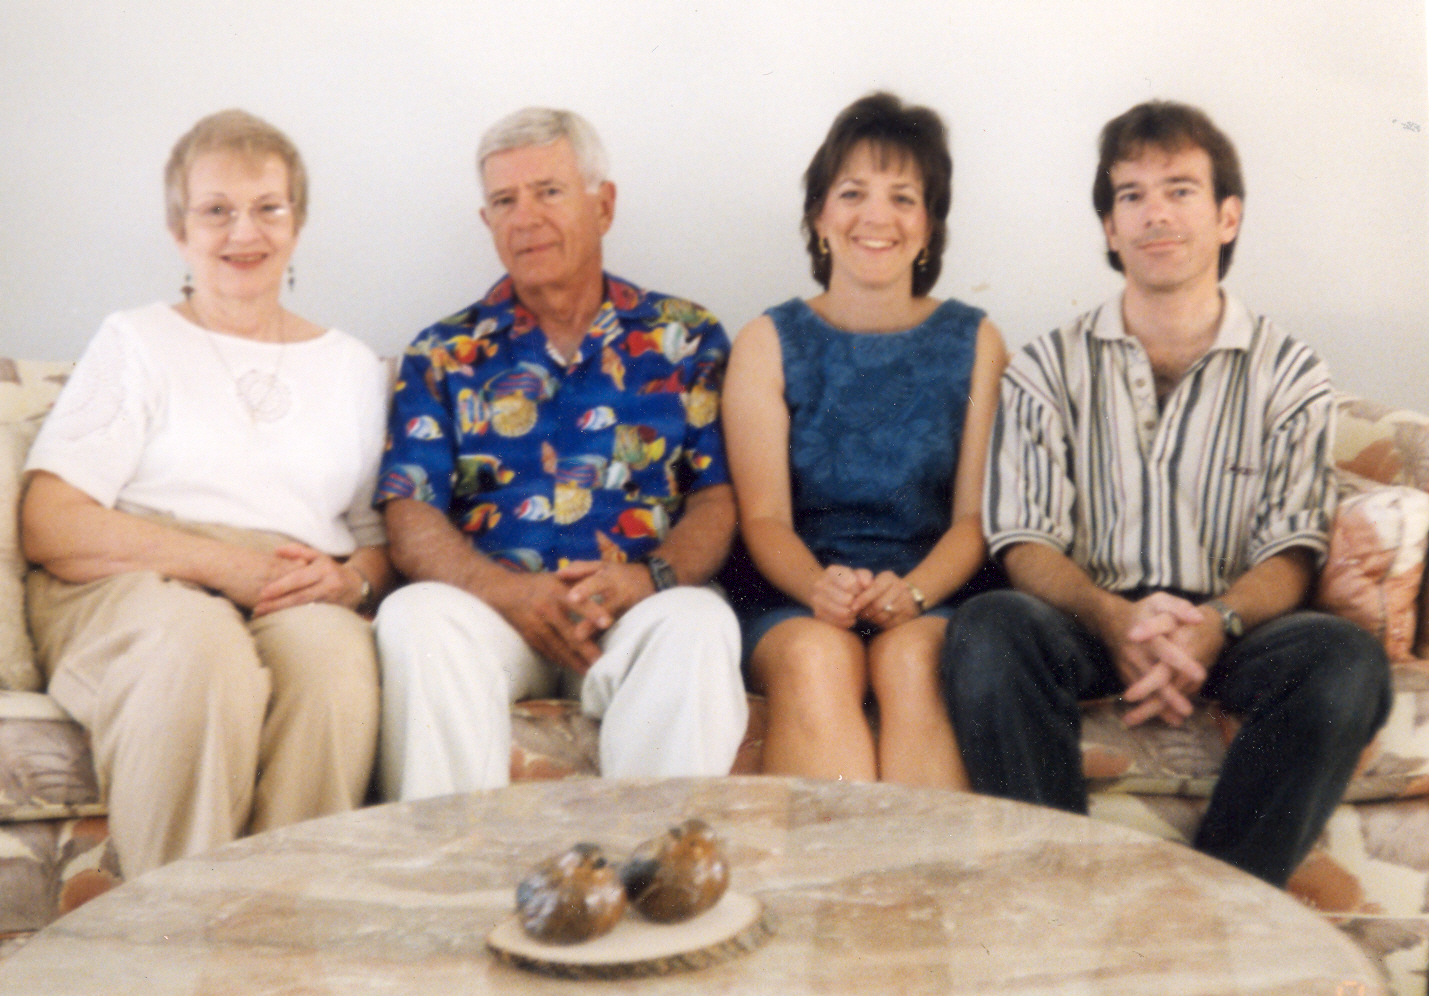 Lewis Family Portrait 1999